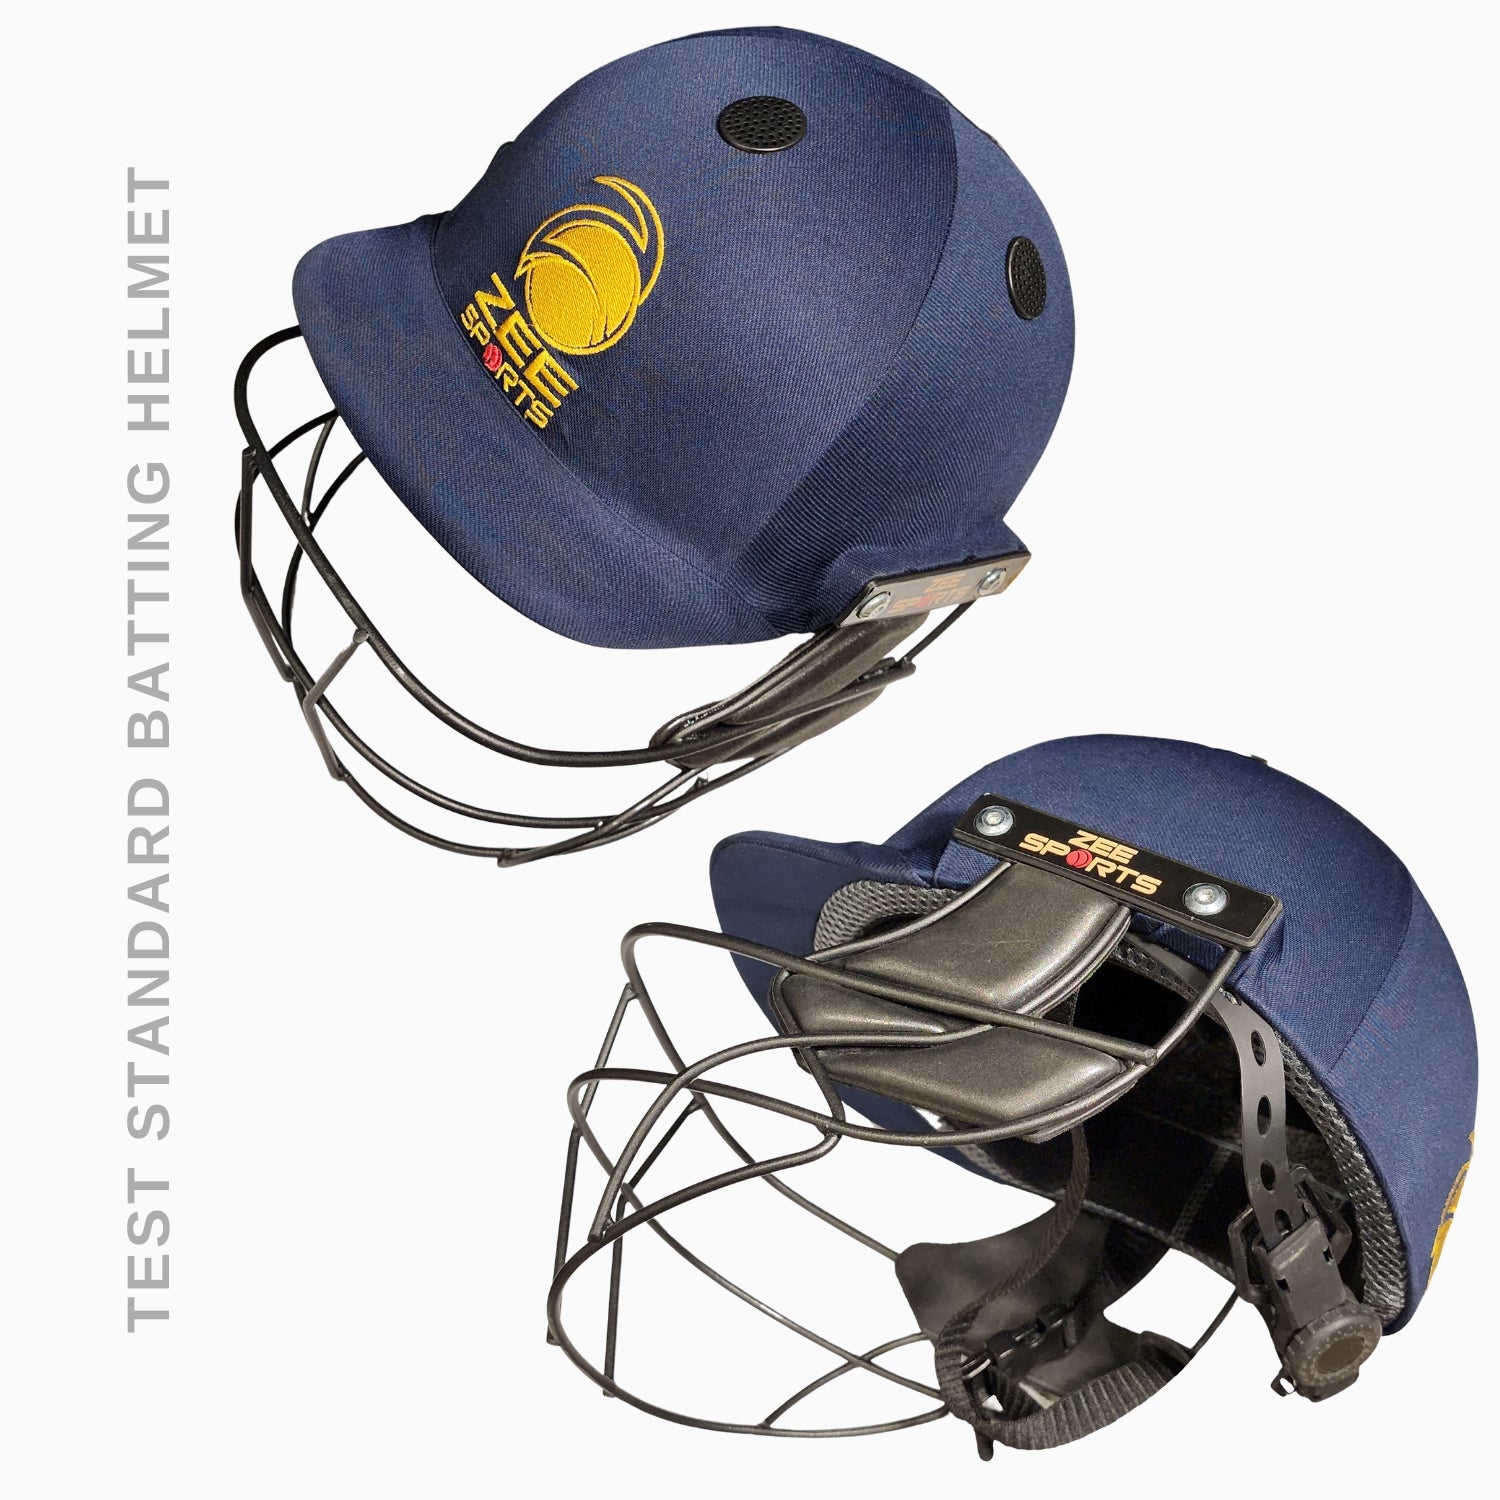 Zee Sports Complete Kit, Mustang Batsman Bundle